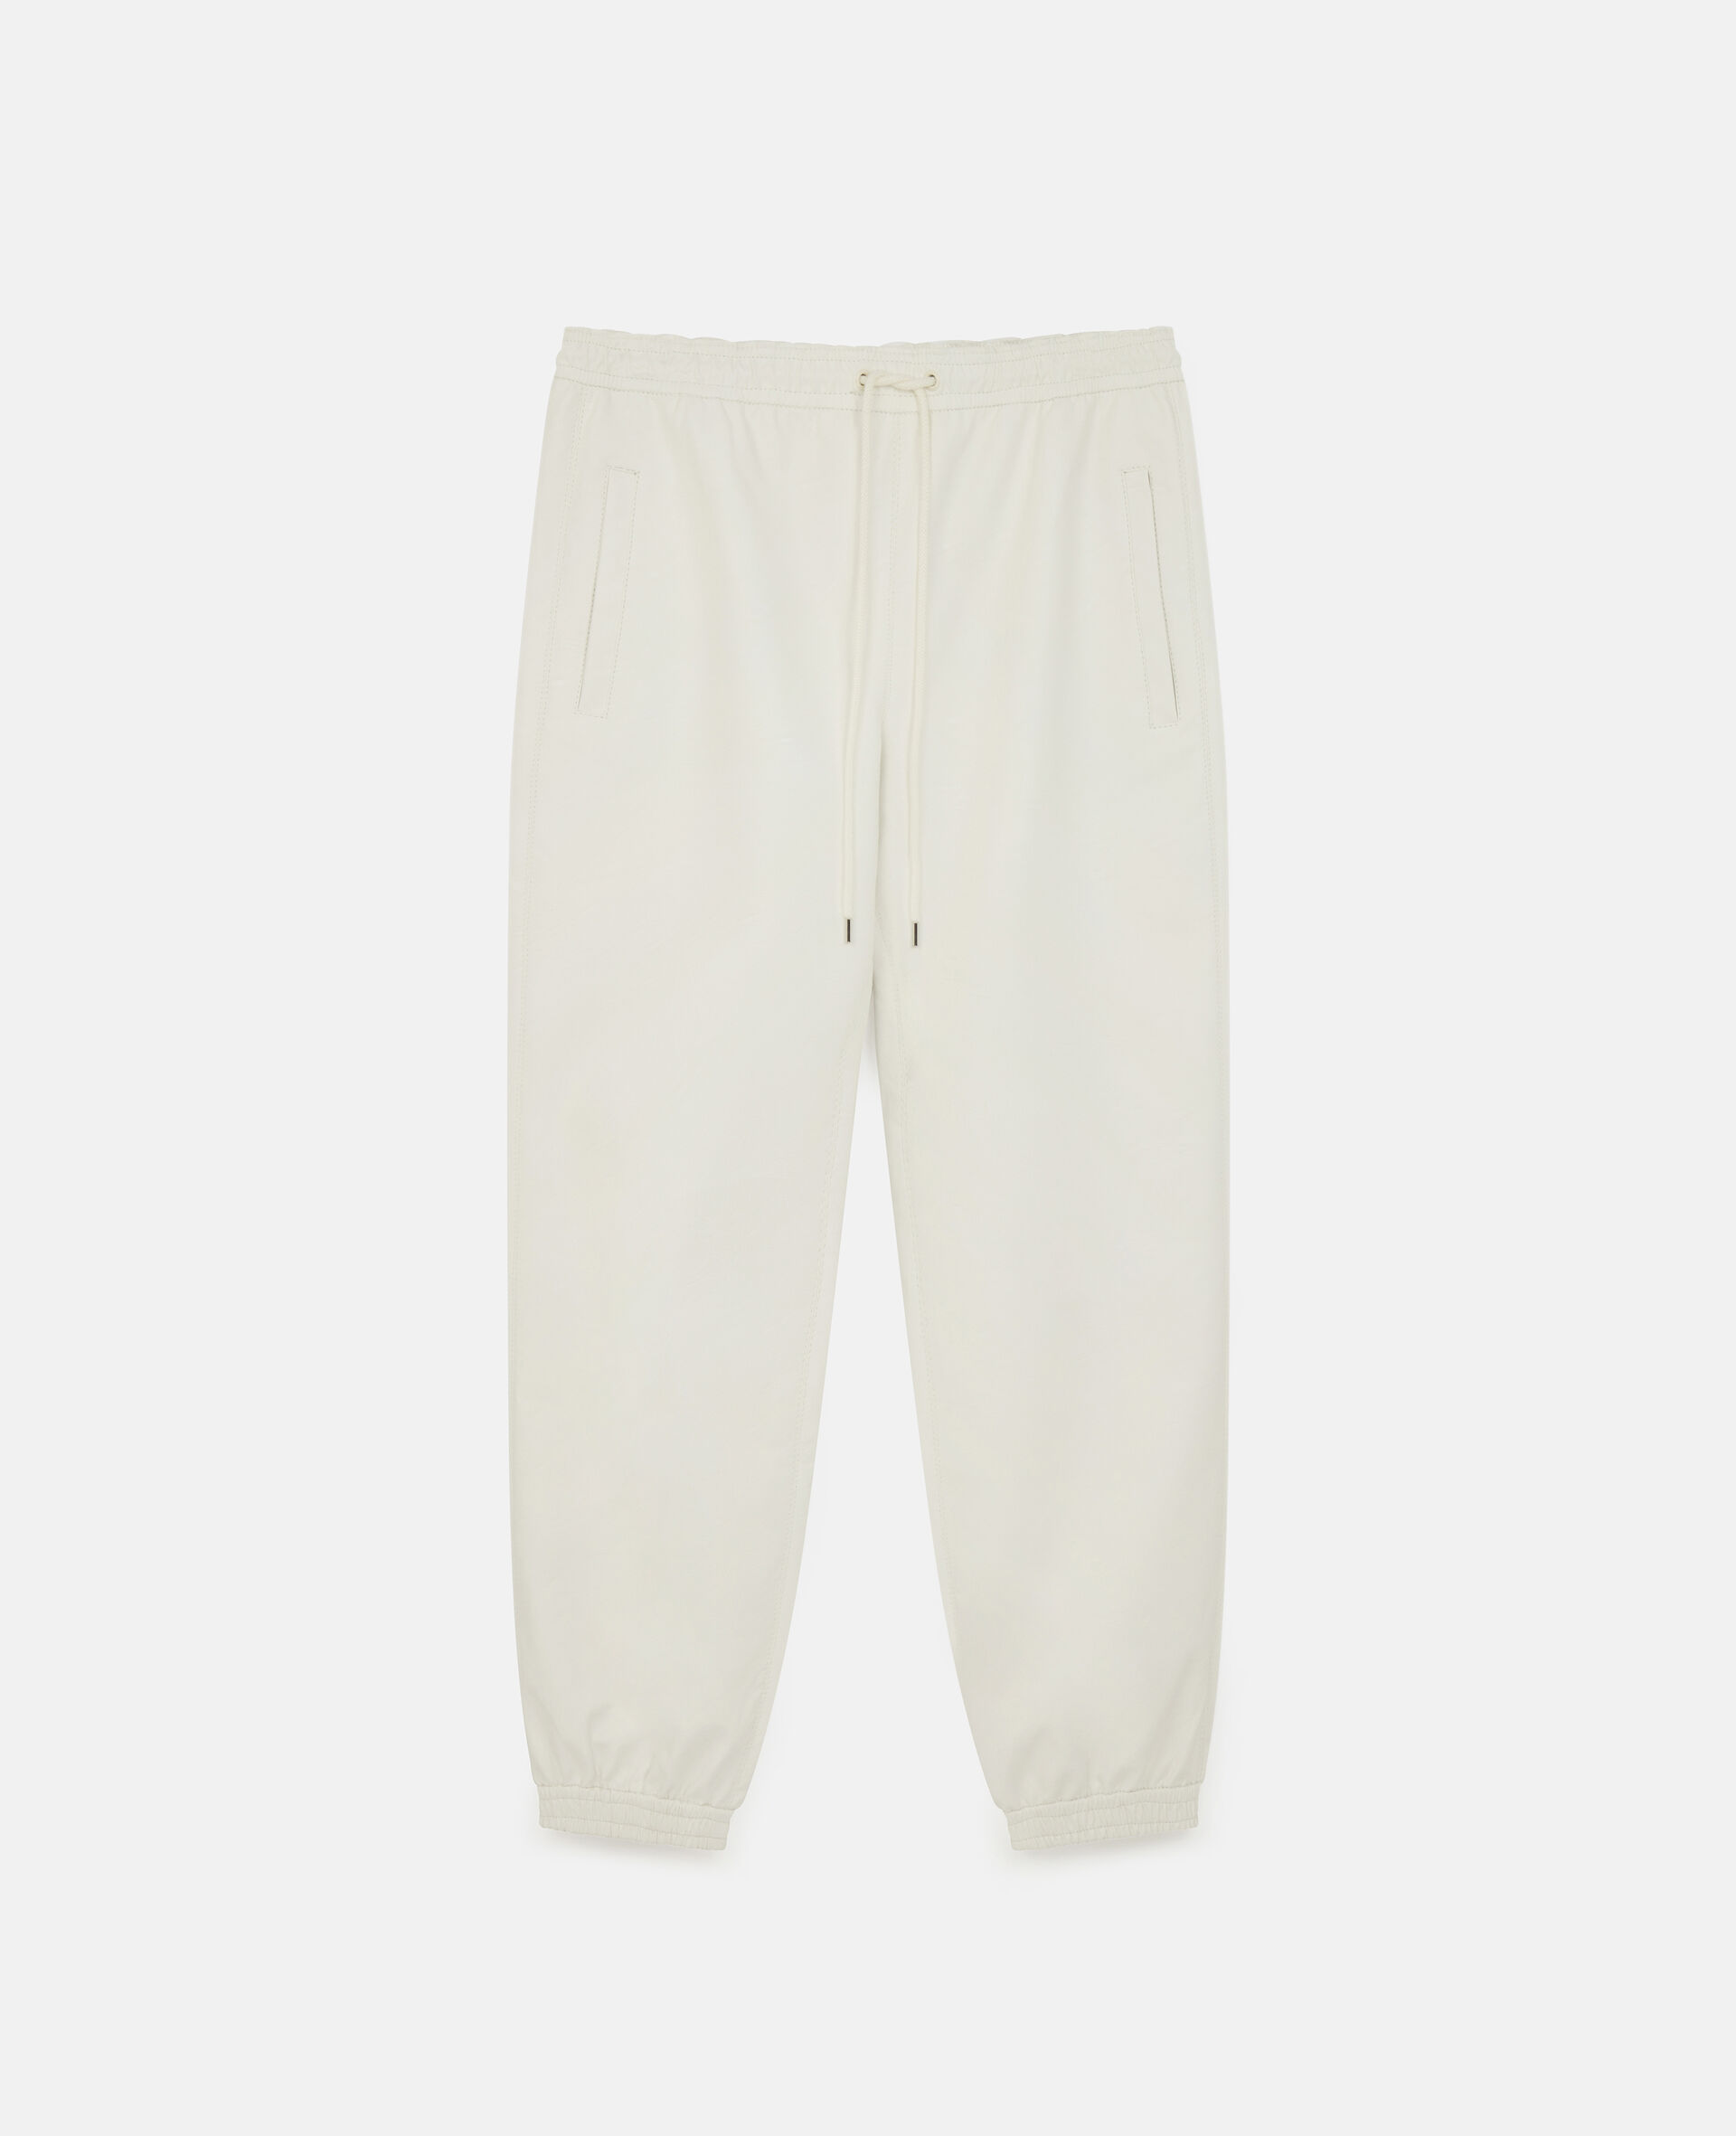 Pantalon en matiere synthetique-Blanc-large